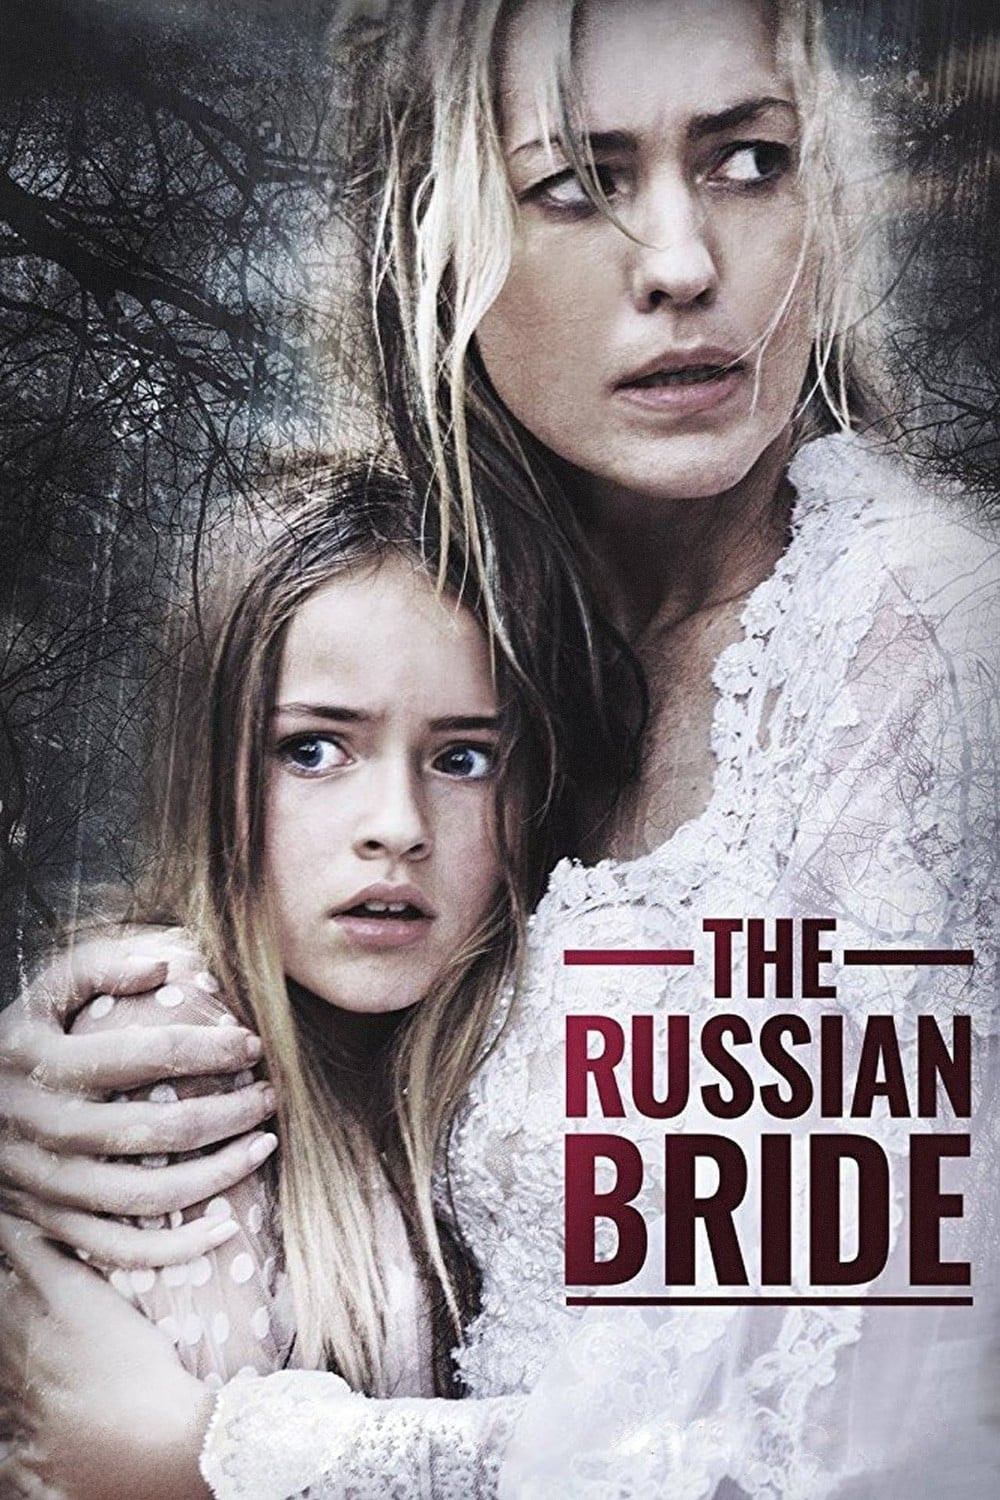 Plakat von "The Russian Bride"